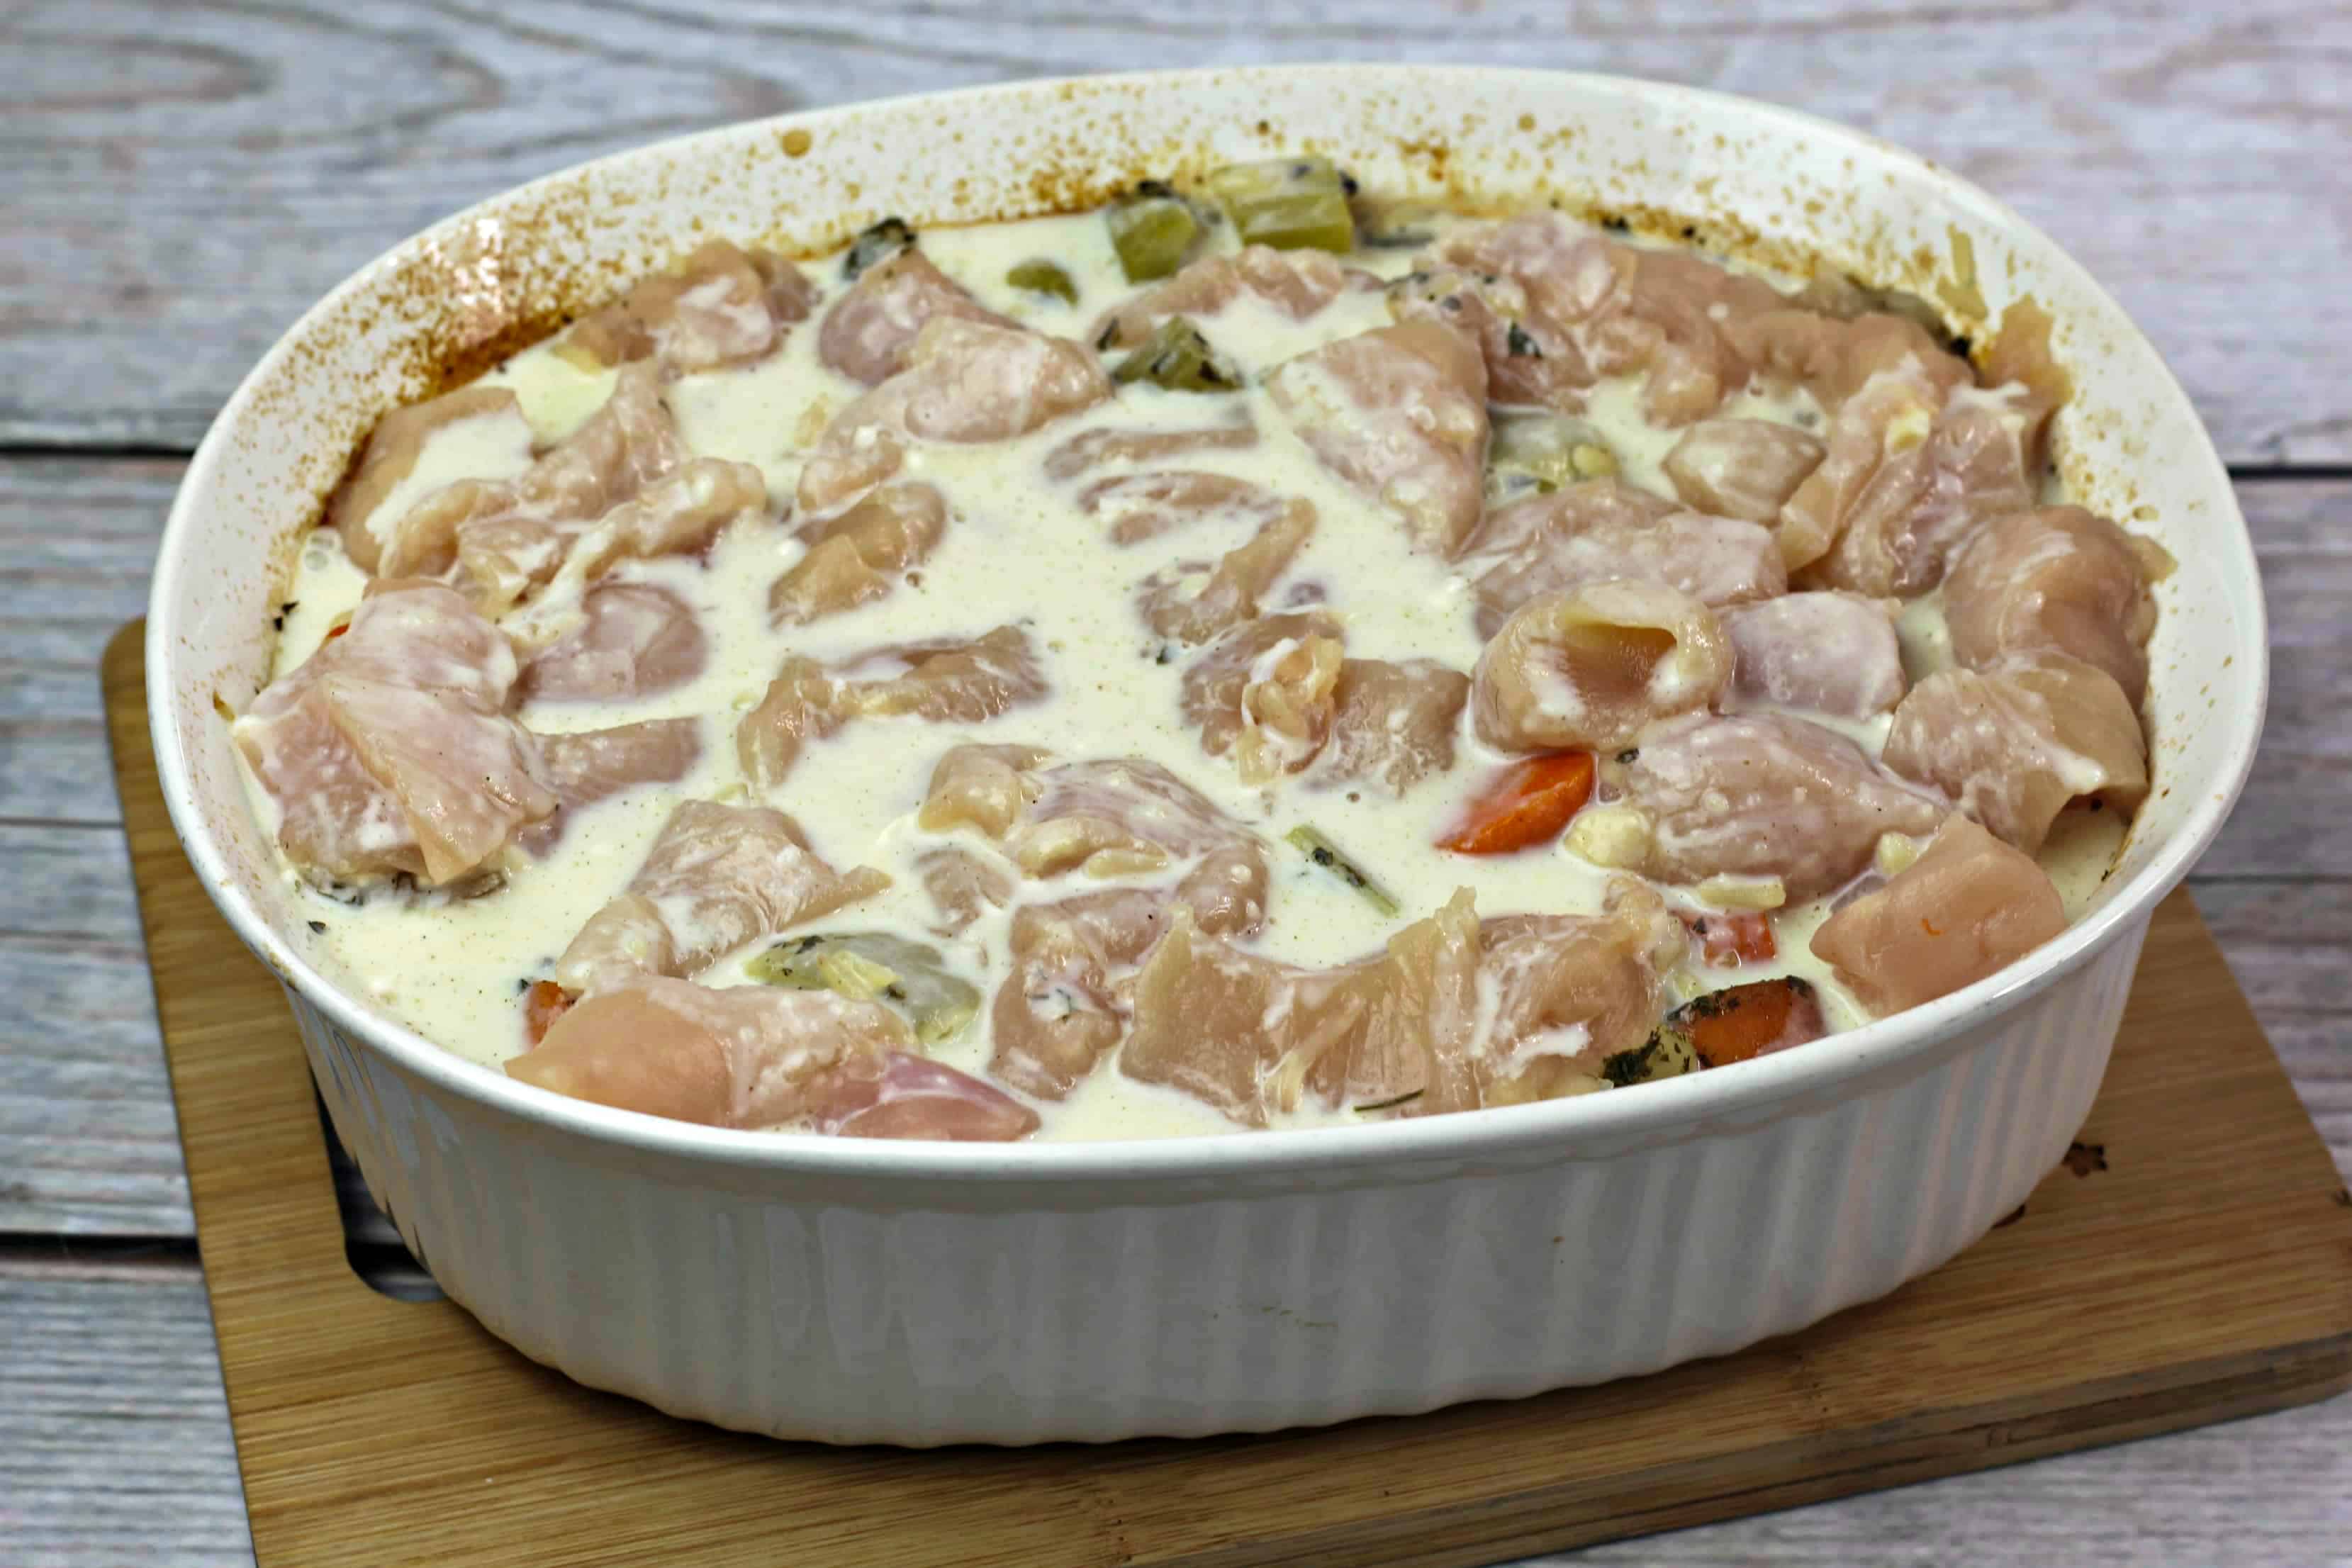 chicken in the casserole dish